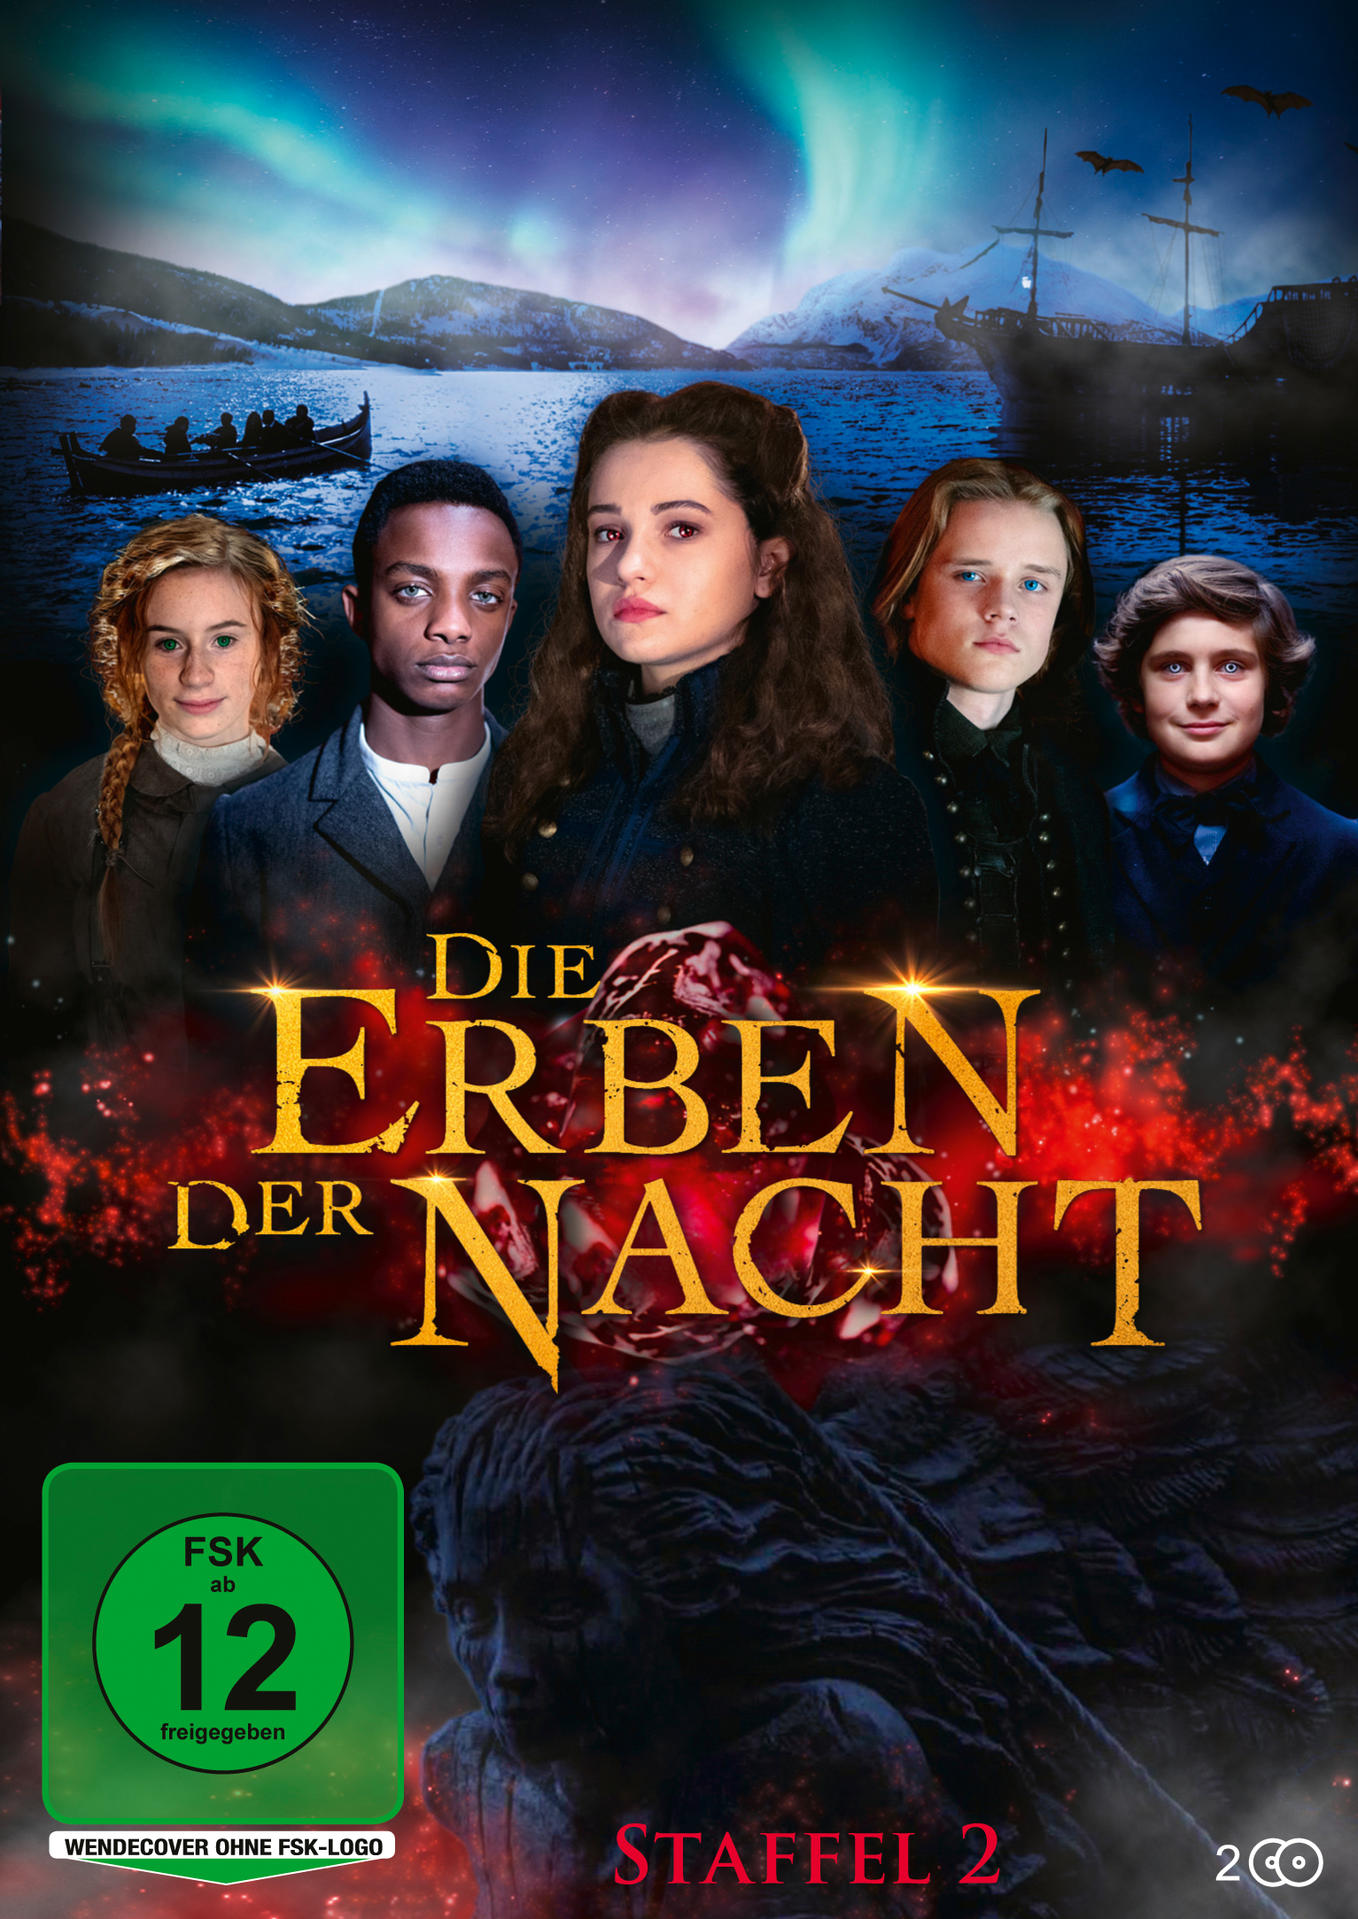 Die Erben der Nacht - Staffel 2 DVD